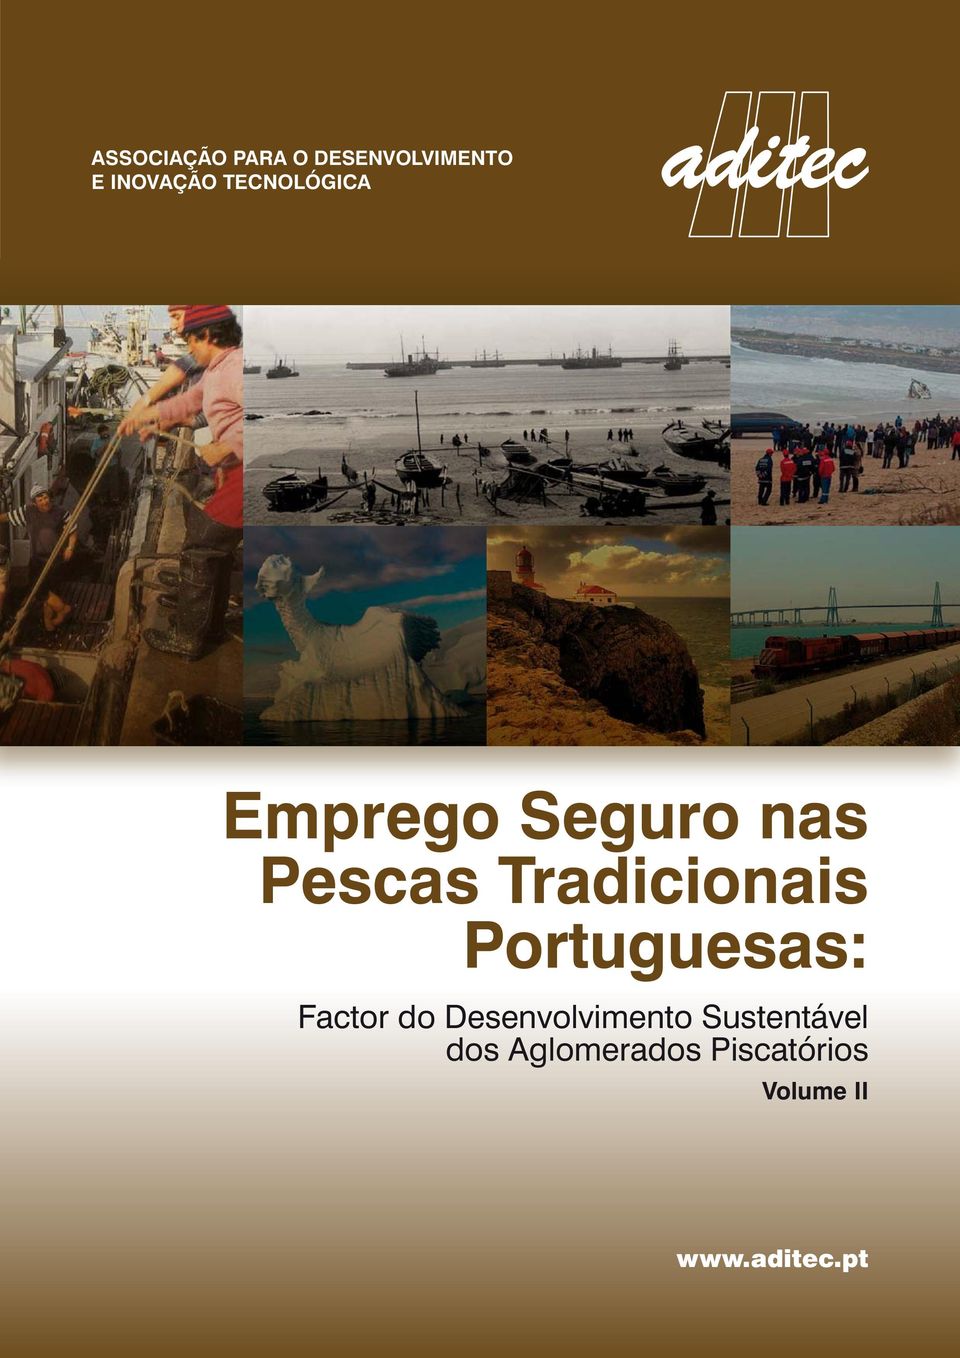 Tradicionais Portuguesas: Factor do